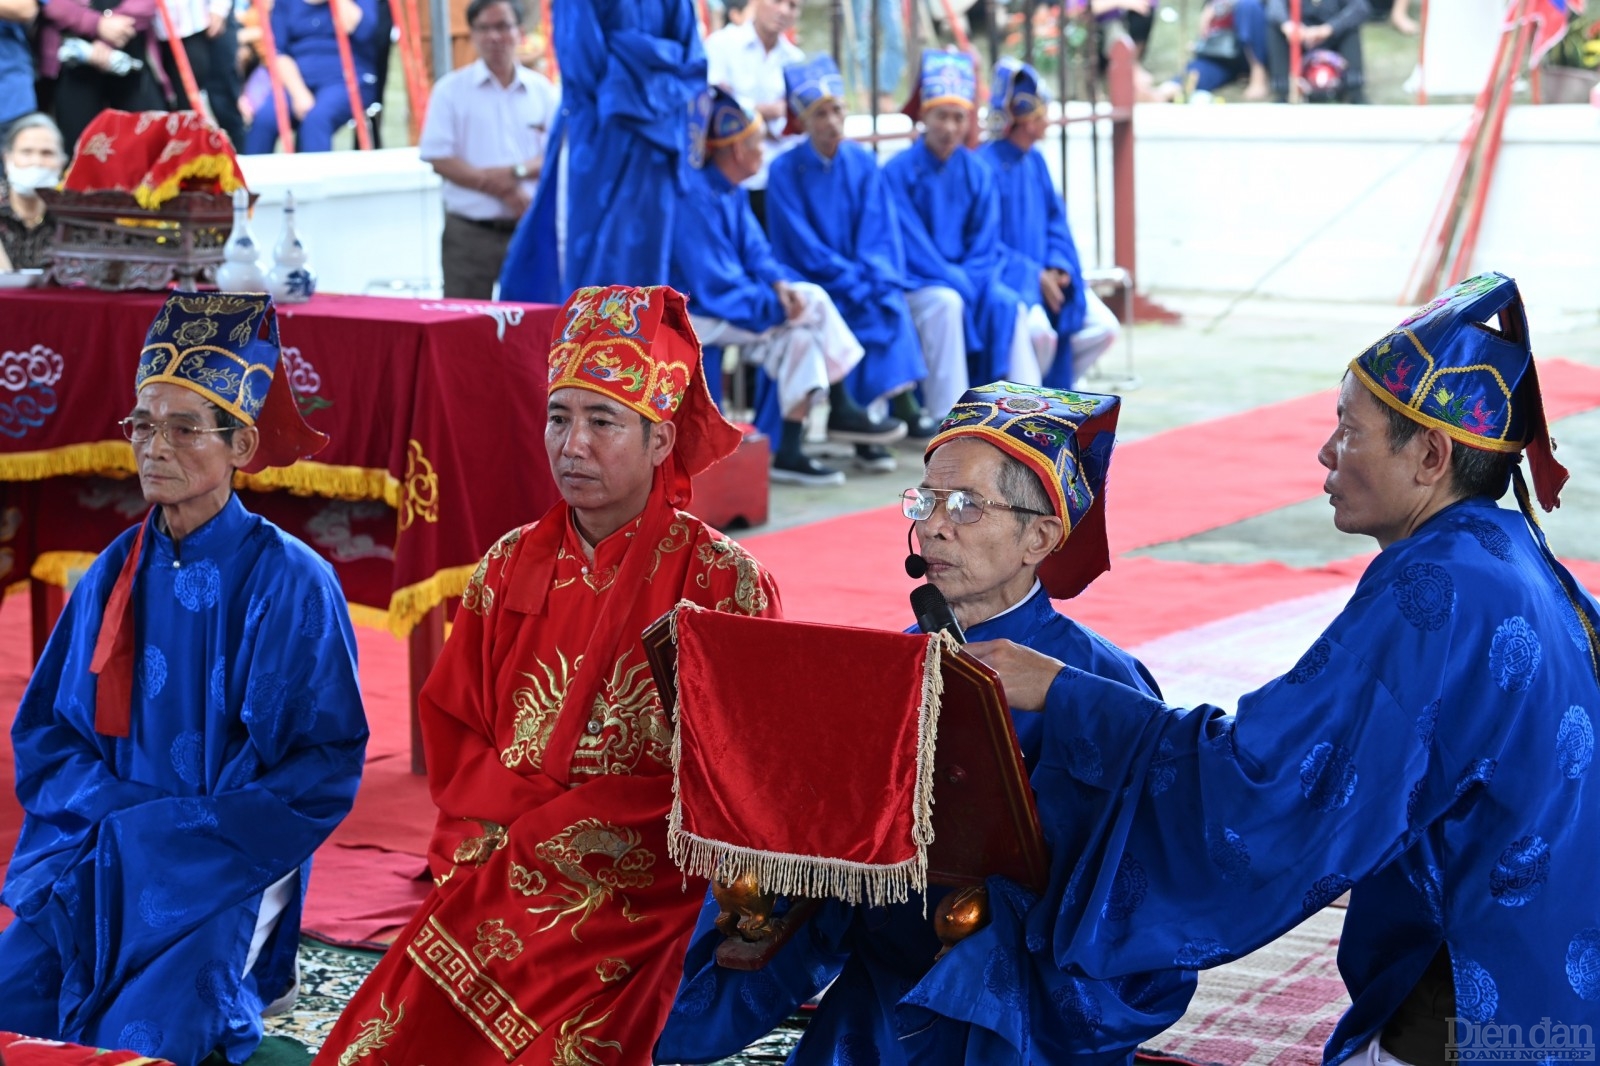 Hình ảnh các bô lão trong làng thành kính thực hiện các nghi lễ phần tế lễ theo phong tục truyền thống.